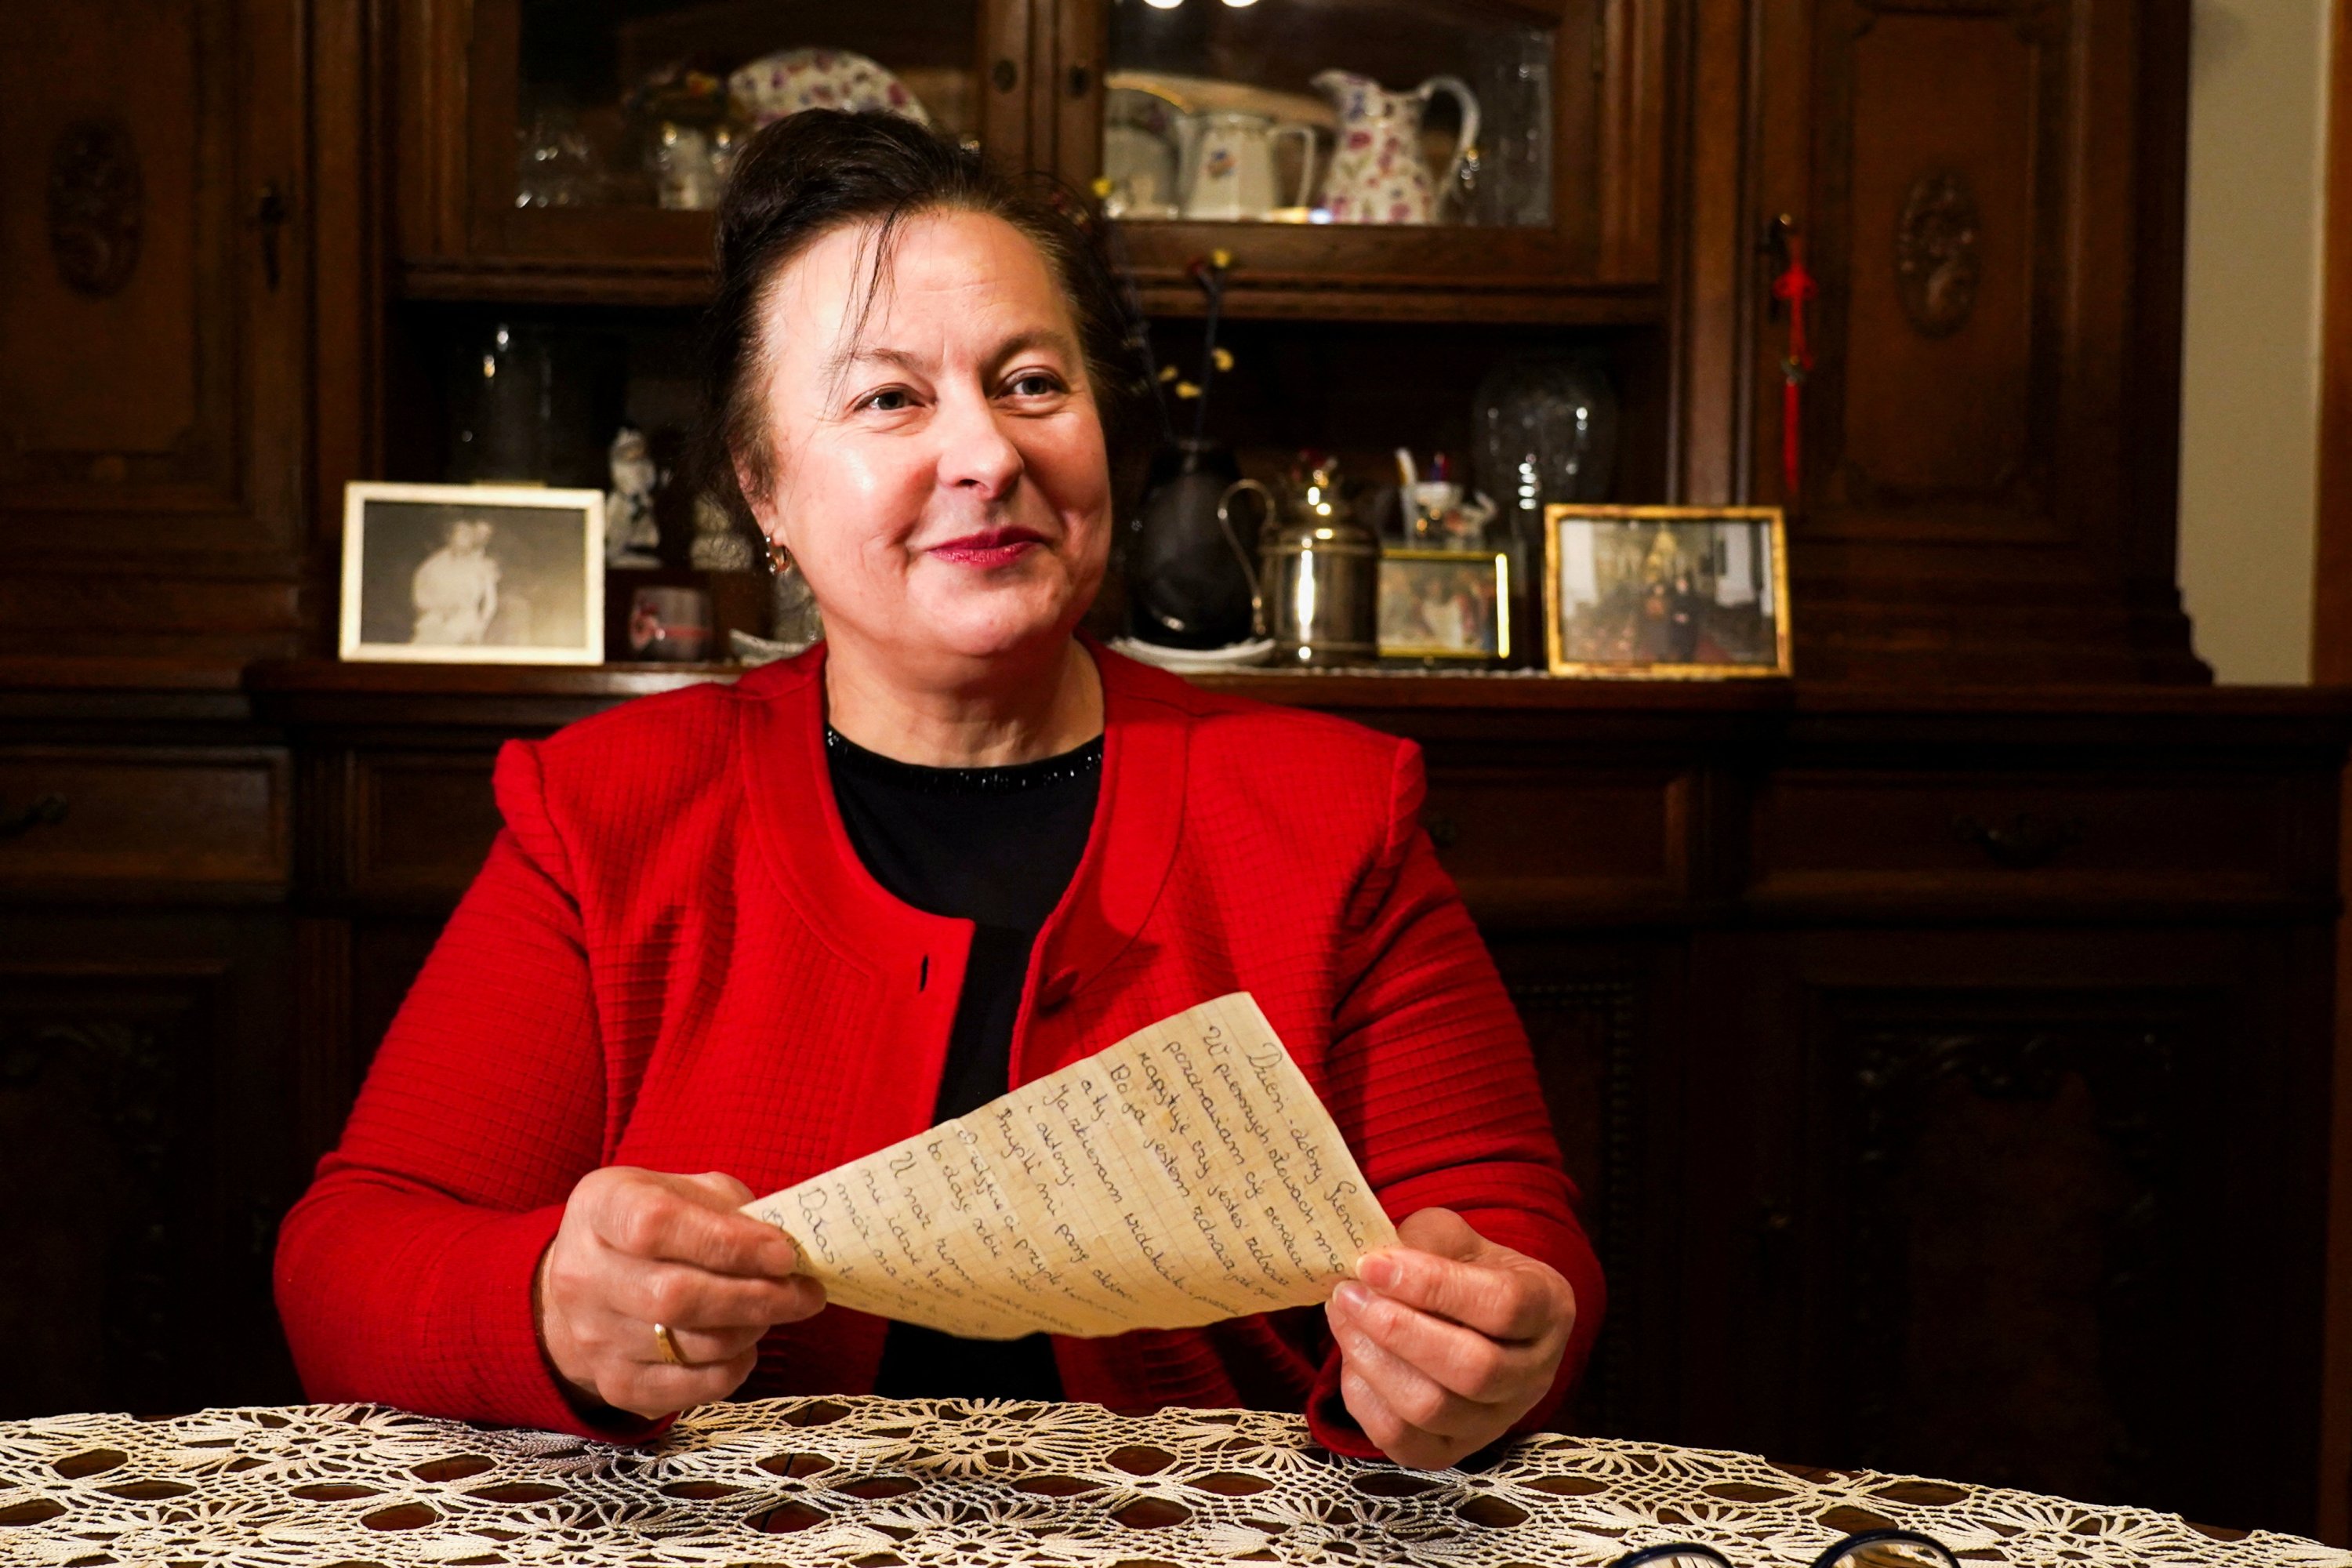 Penerima surat Genowefa Klonowska memegang surat yang diterima sekitar 50 tahun kemudian di Vilnius, Lithuania, 25 Januari 2022. (Foto Reuters)